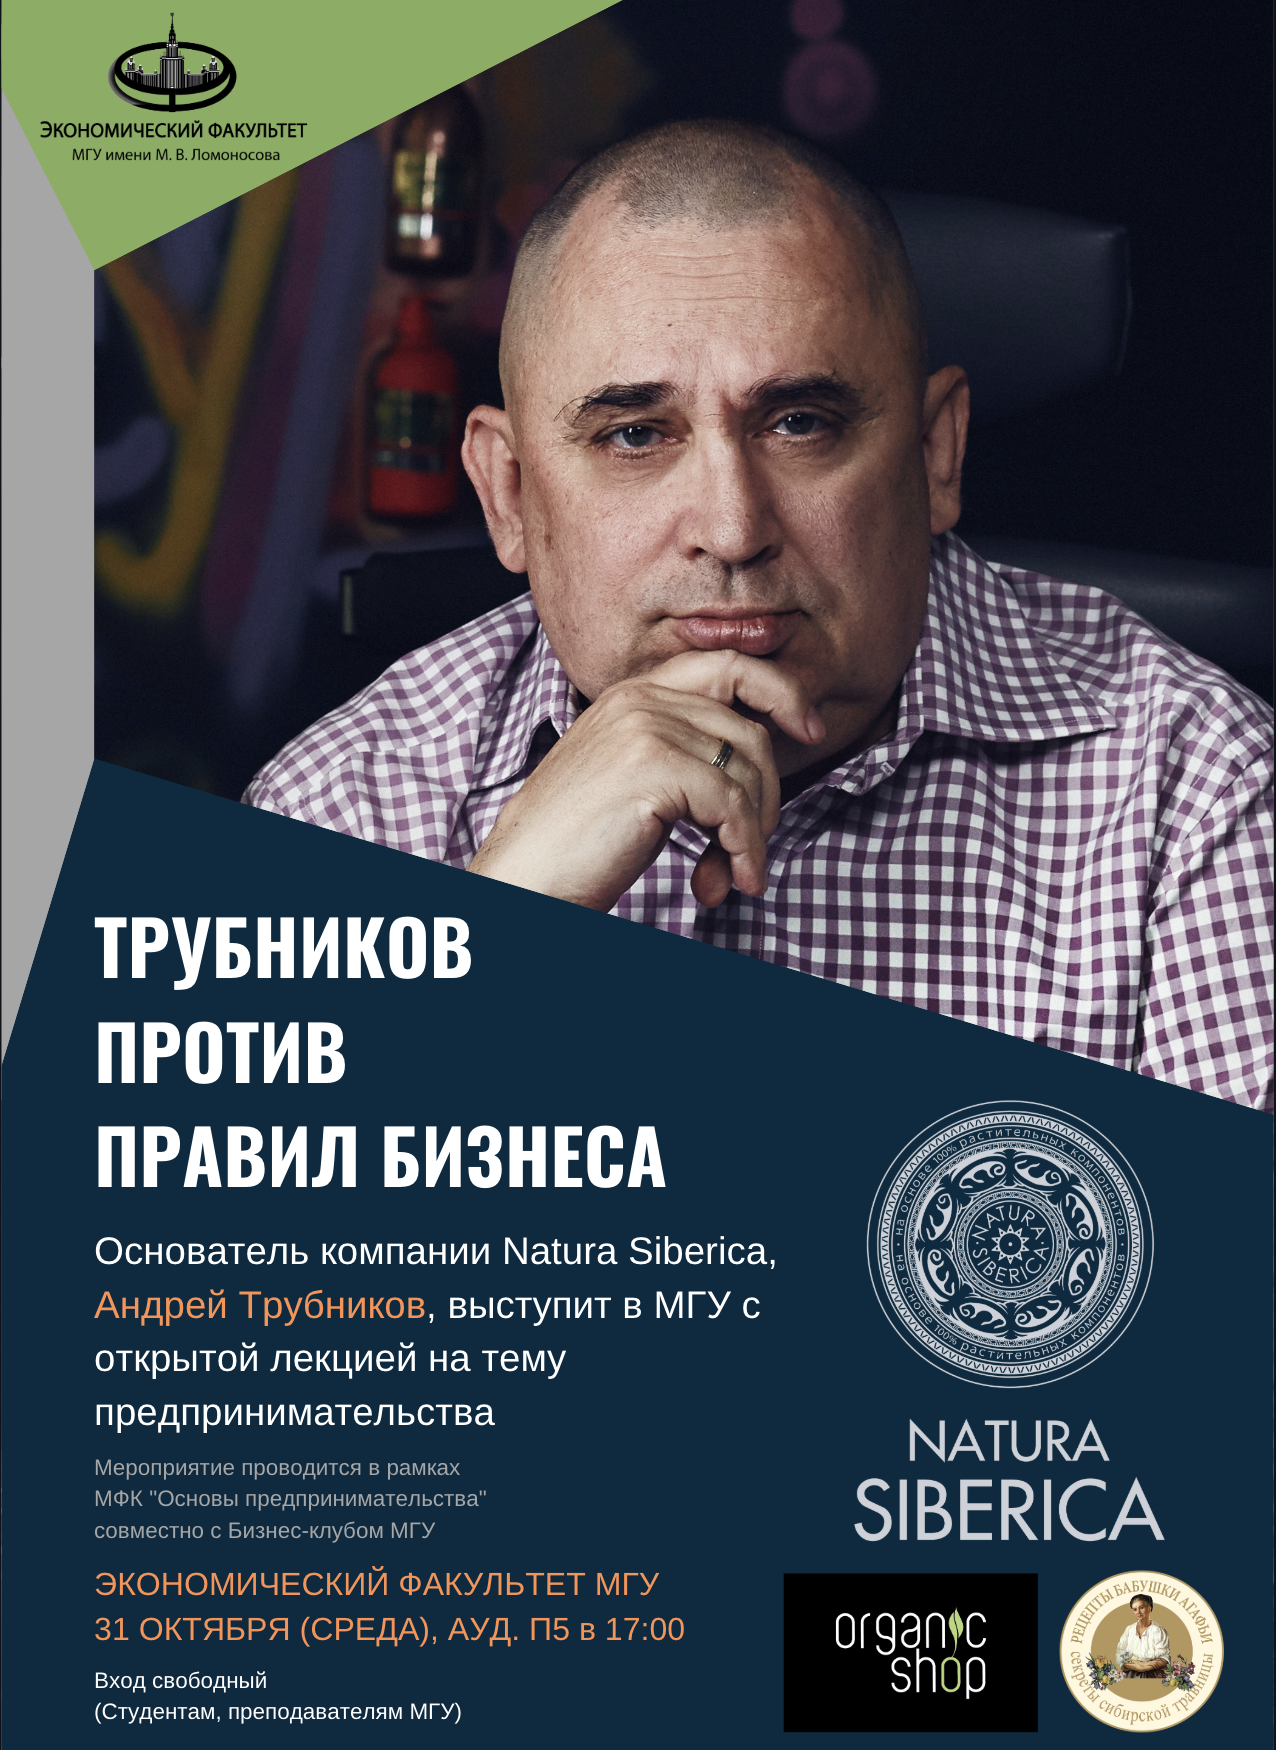 Открытая лекция основателя компании Natura Siberica Андрея Трубникова - «Трубников против правил бизнеса»